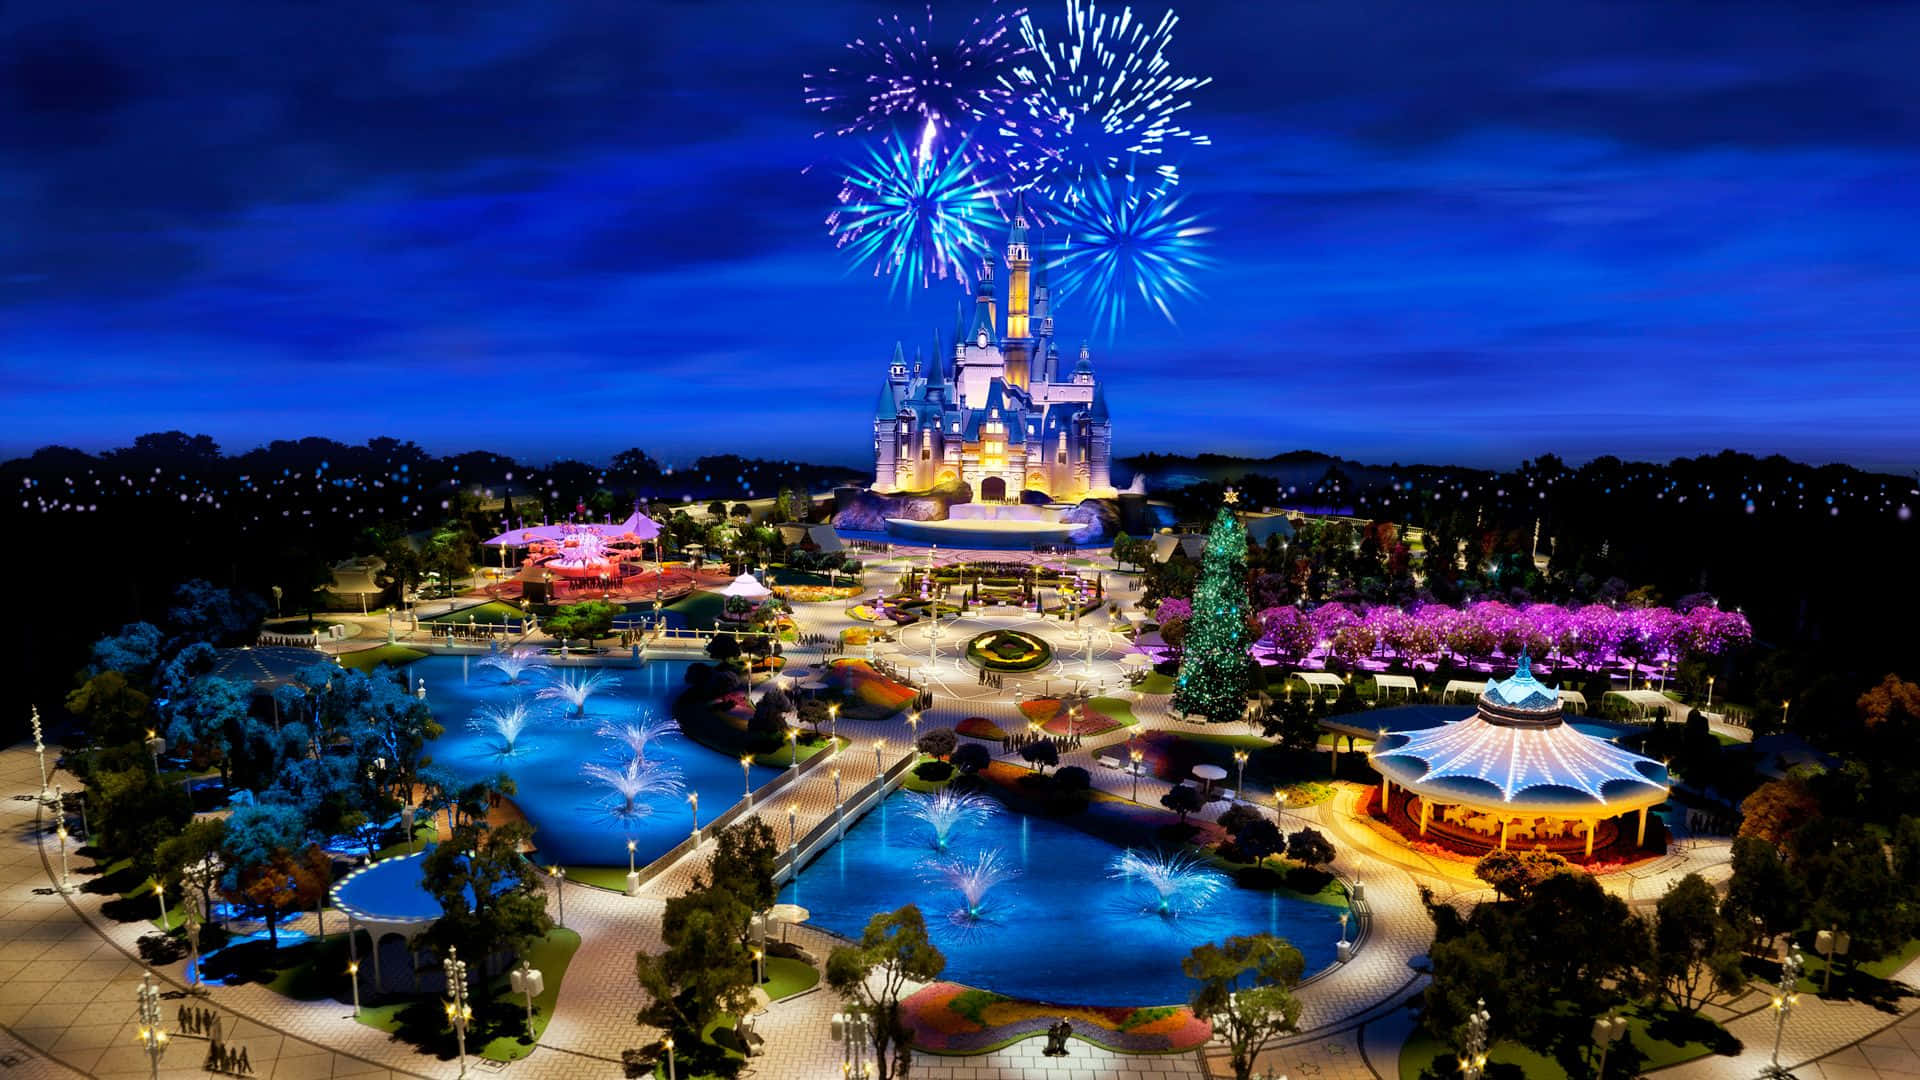 Unparque De Disney Con Fuegos Artificiales Y Un Castillo